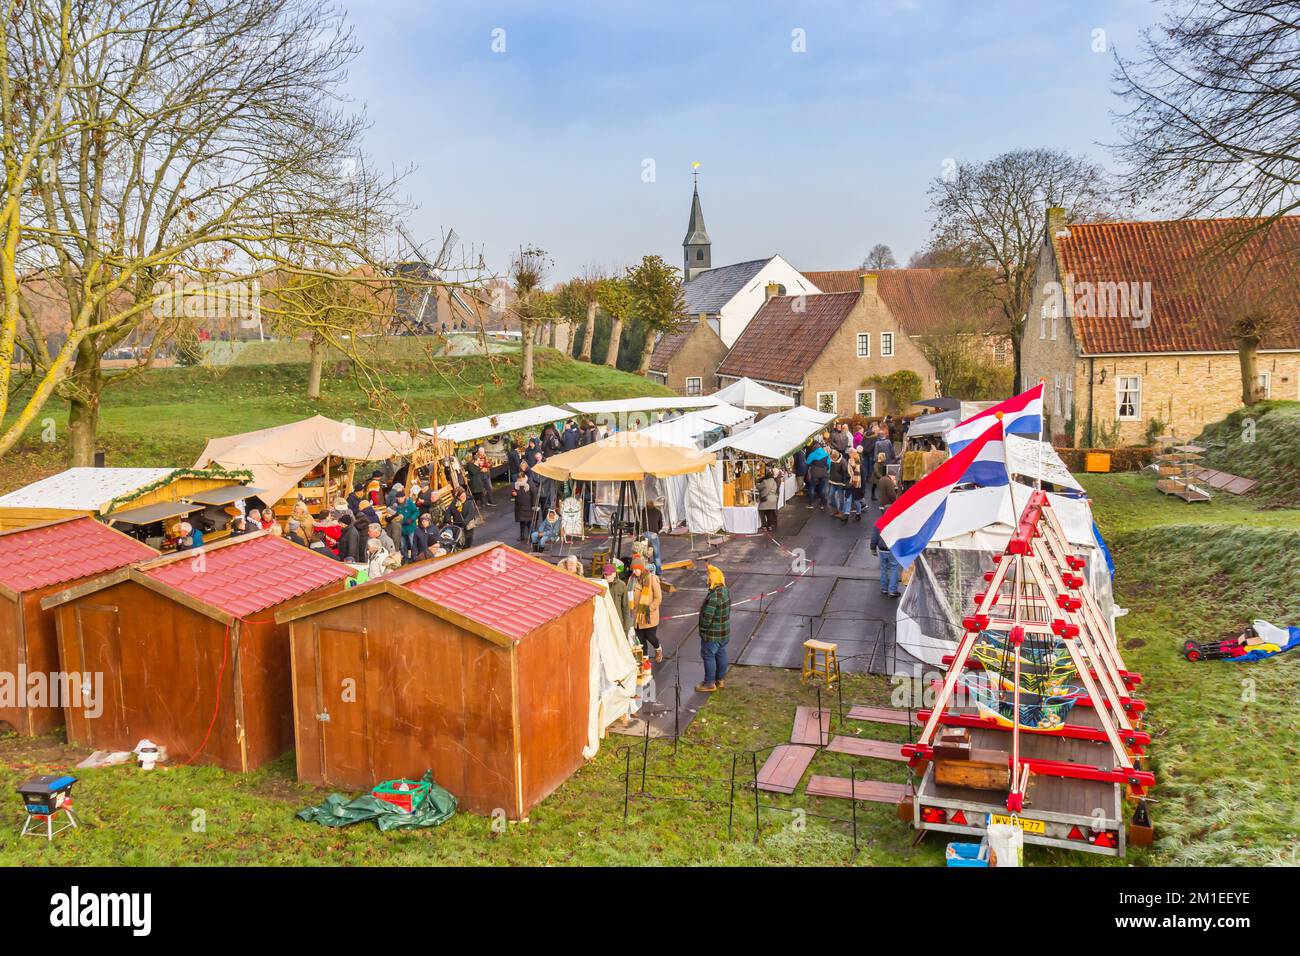 Mercado de Navidad en el pueblo histórico Bourtange, Países Bajos Foto de stock